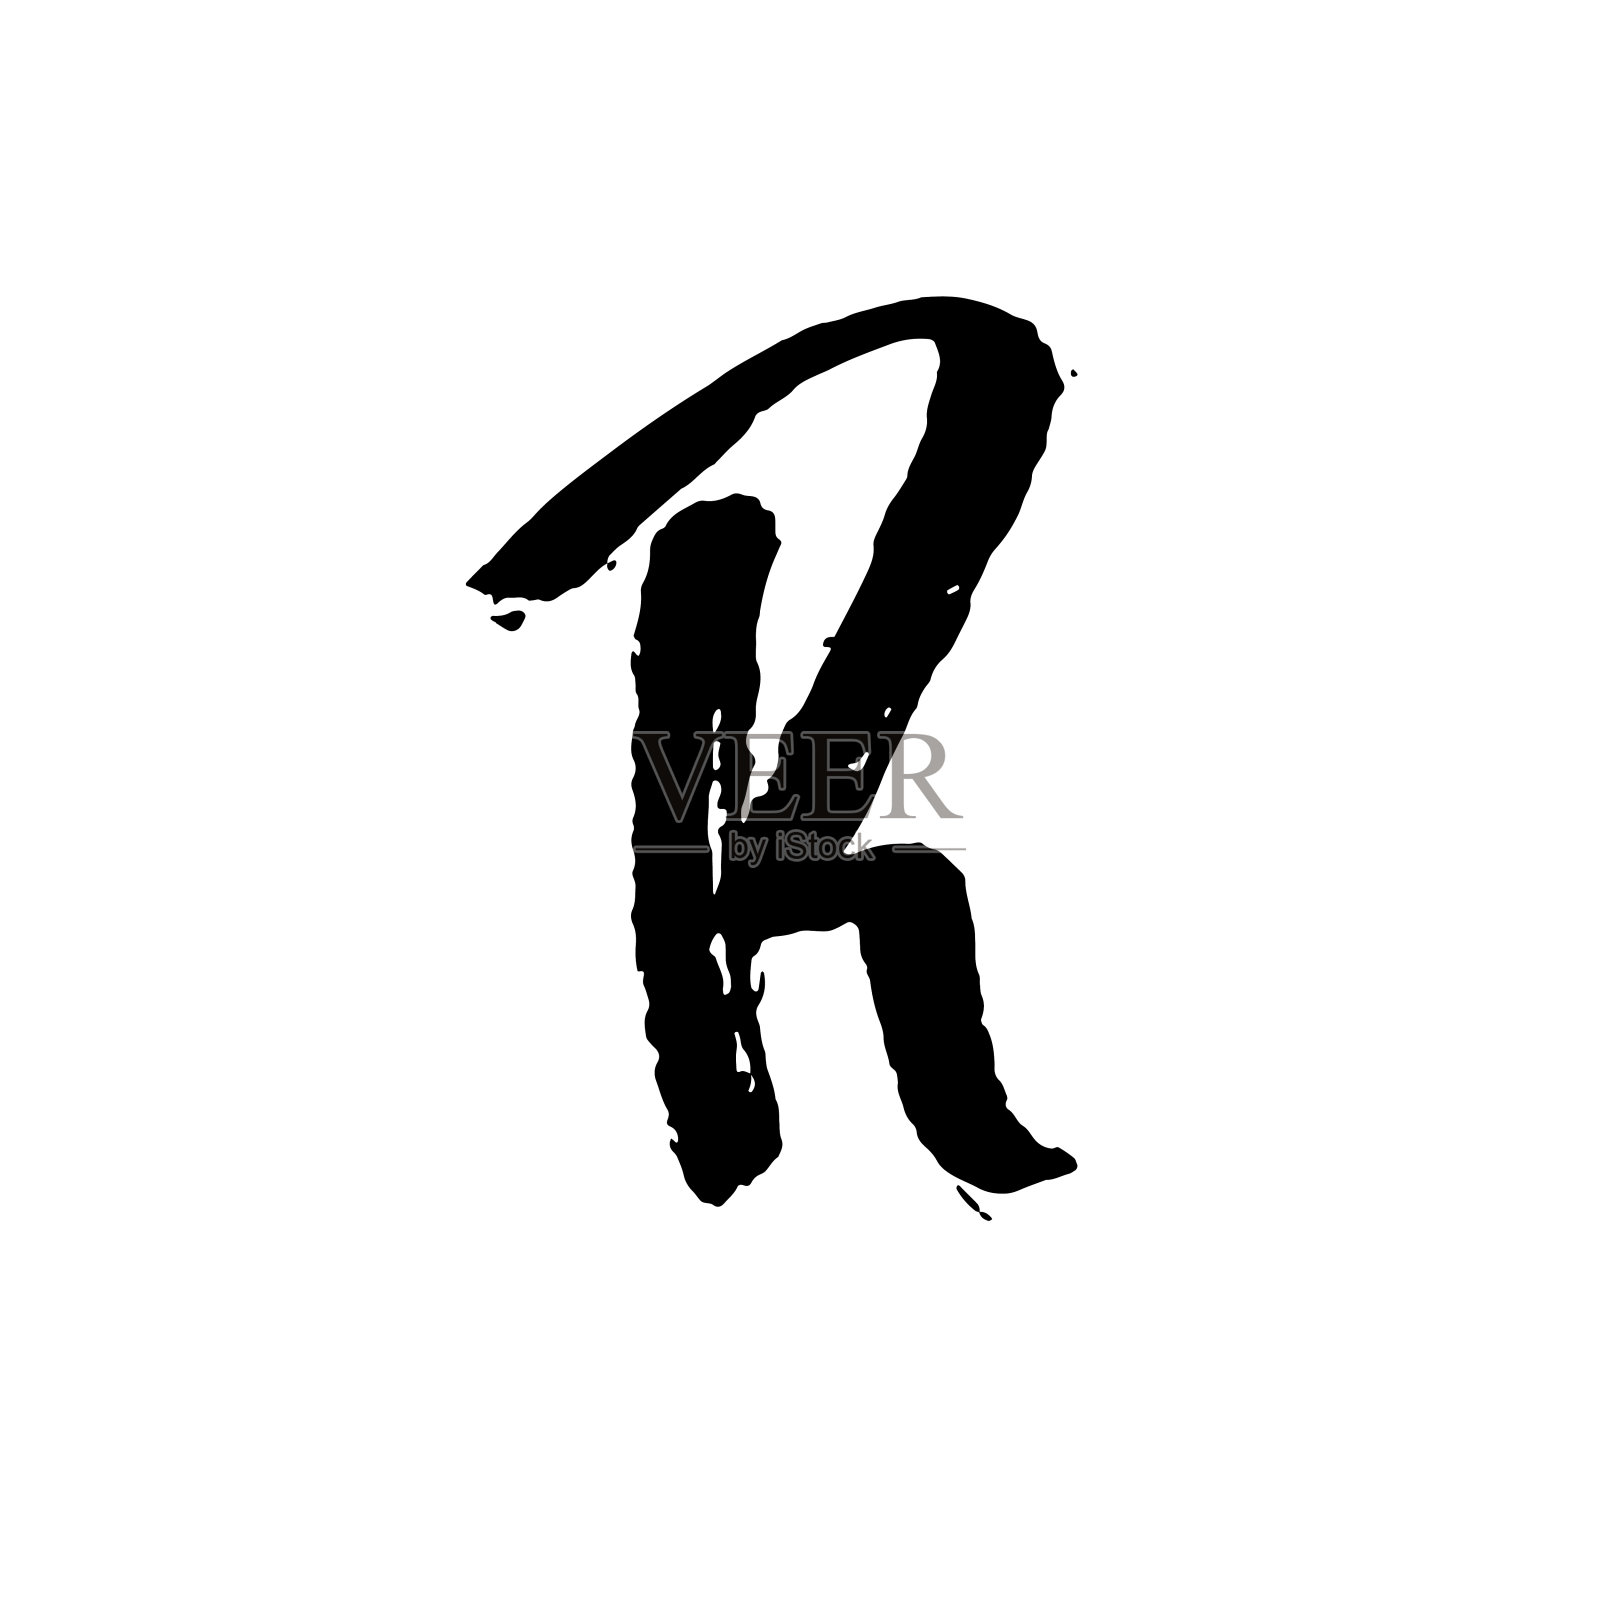 字母r用干刷子手写。粗糙的笔触，纹理字体。矢量插图。垃圾摇滚风格优雅的字母表。设计元素图片